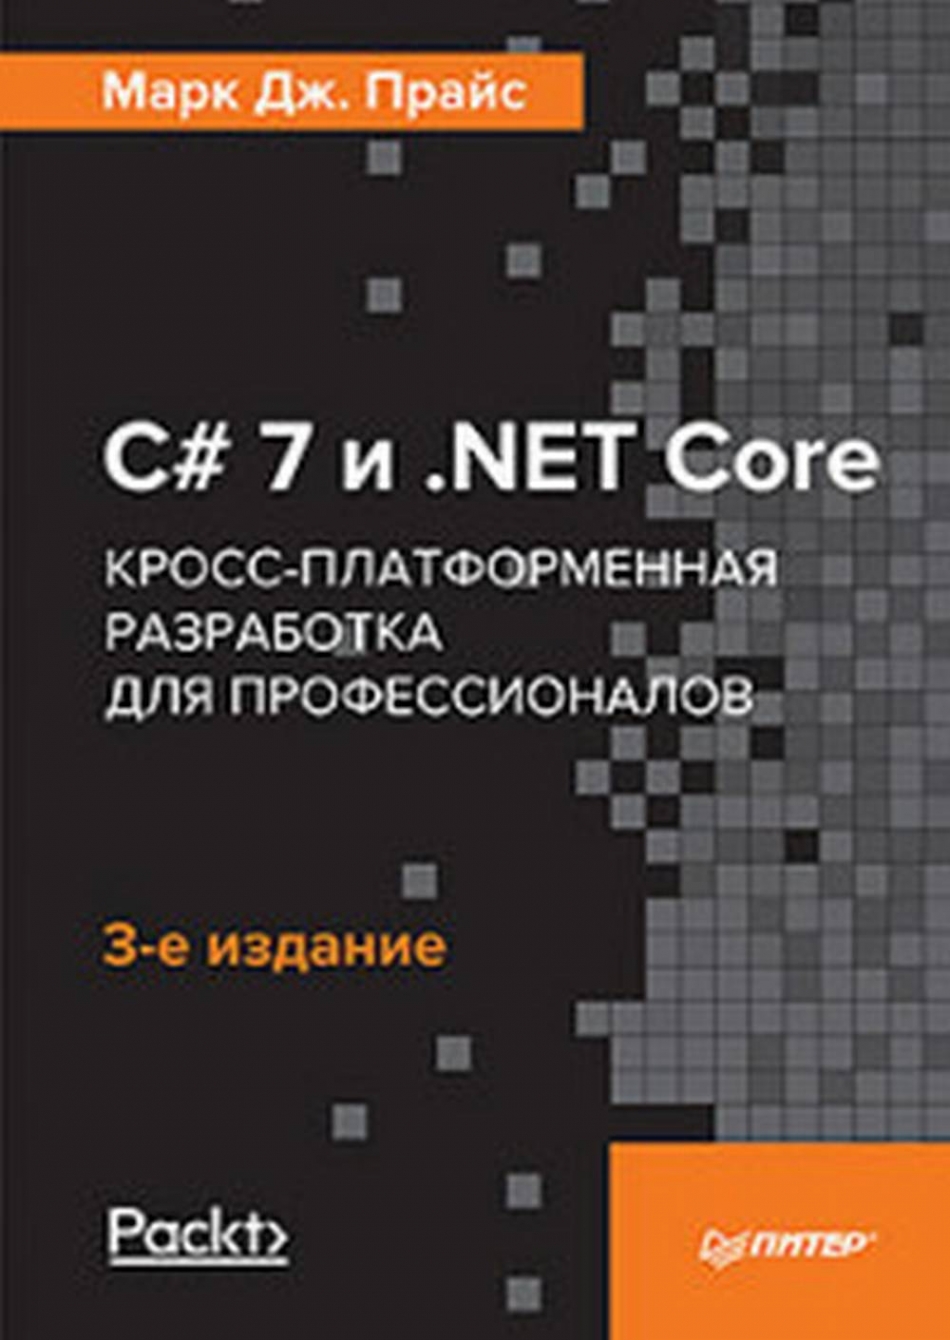 Прайс М. C# 7 и .NET Core. Кросс-платформенная разработка для профессионалов 